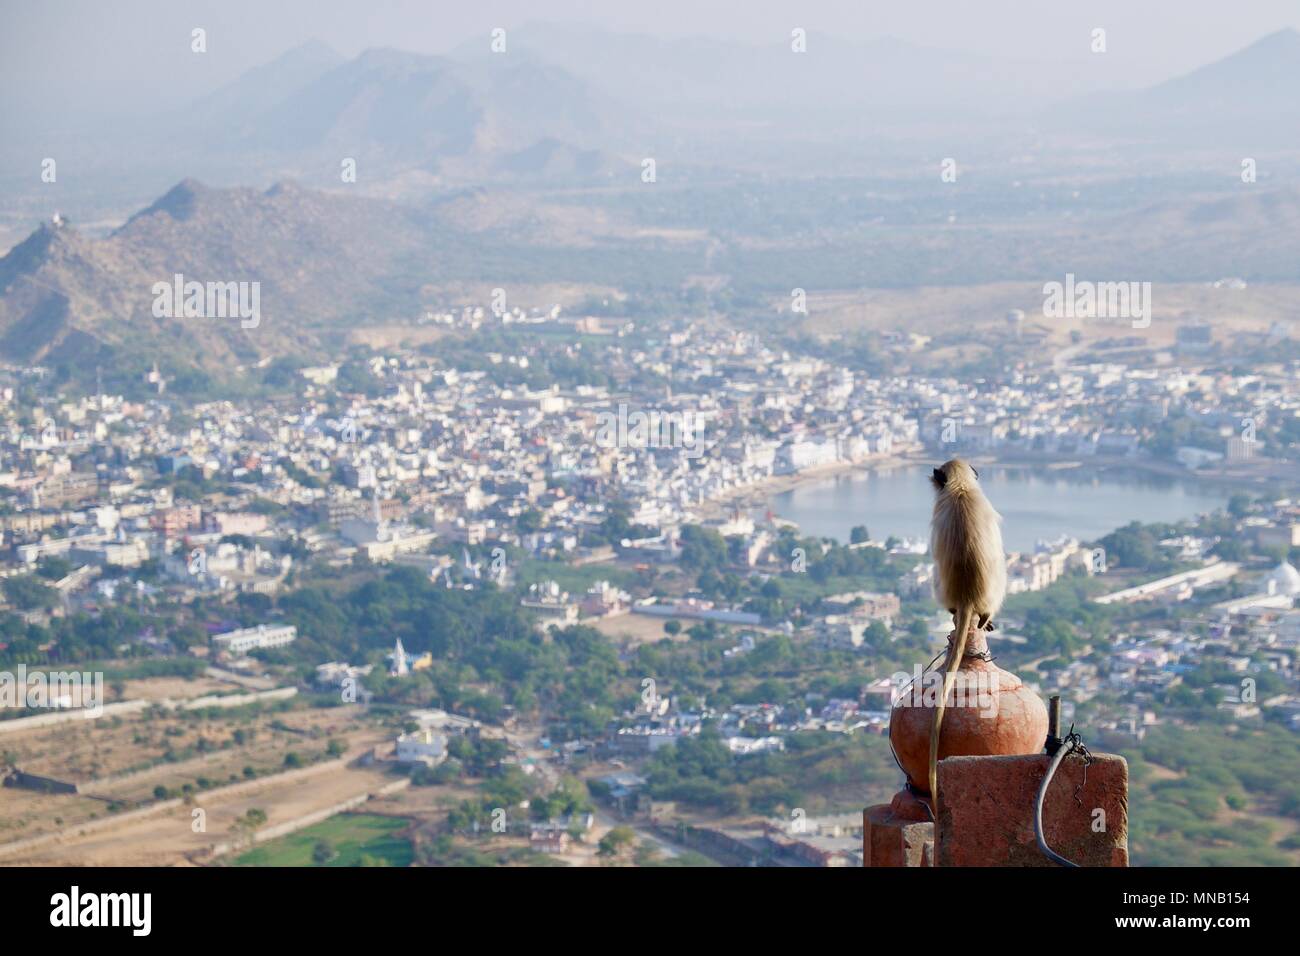 Anzeigen von Pushkar Stadt und See von Savitri Hill templewith ein langur Affe im Vordergrund Stockfoto